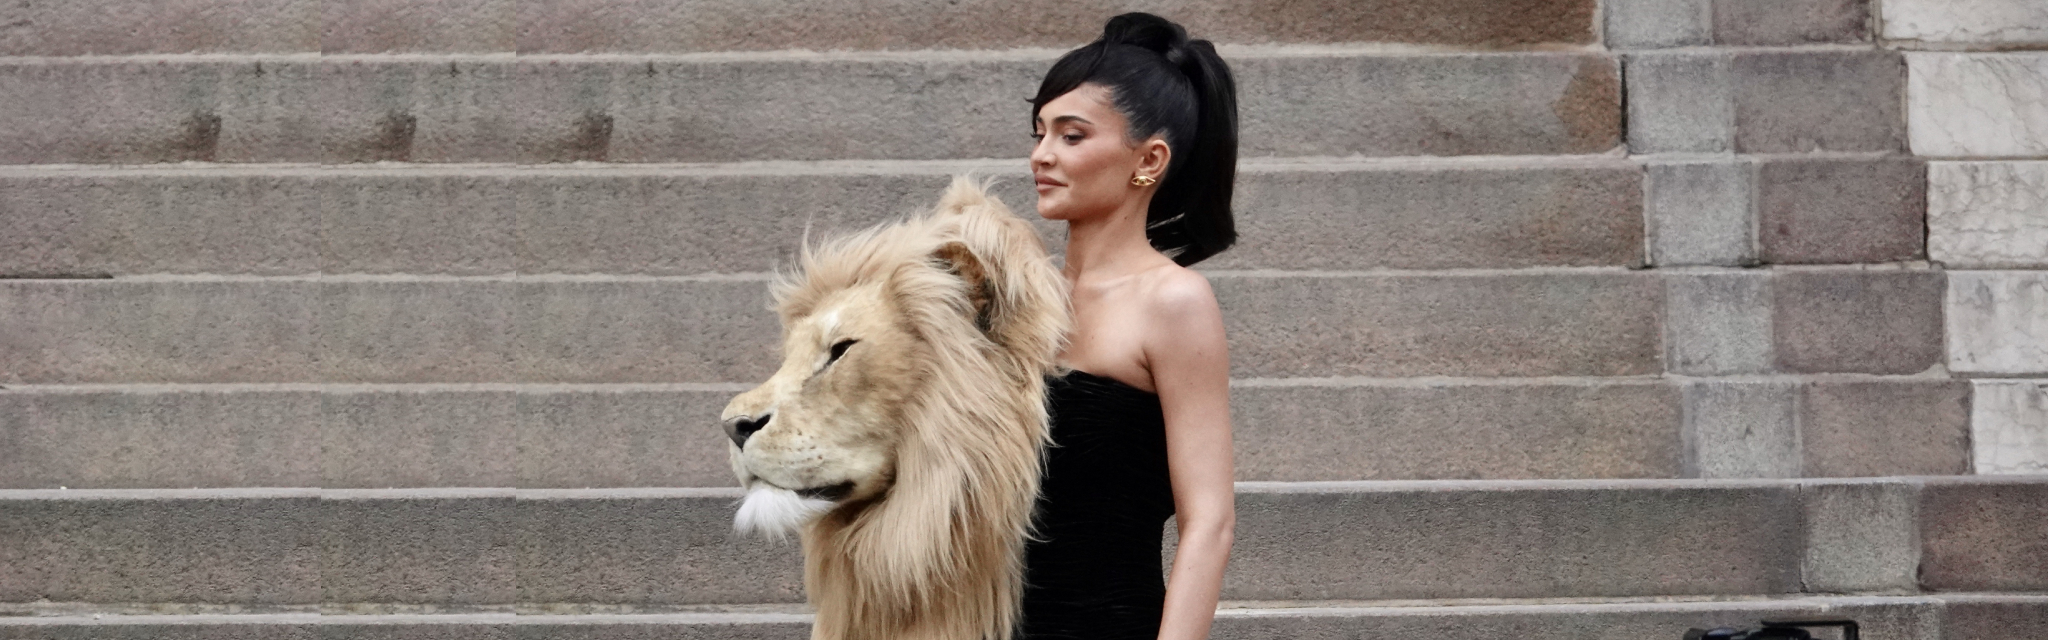 Kylie Jenner draagt jurk met enórme leeuwenkop, en is nu prooi voor kritiek